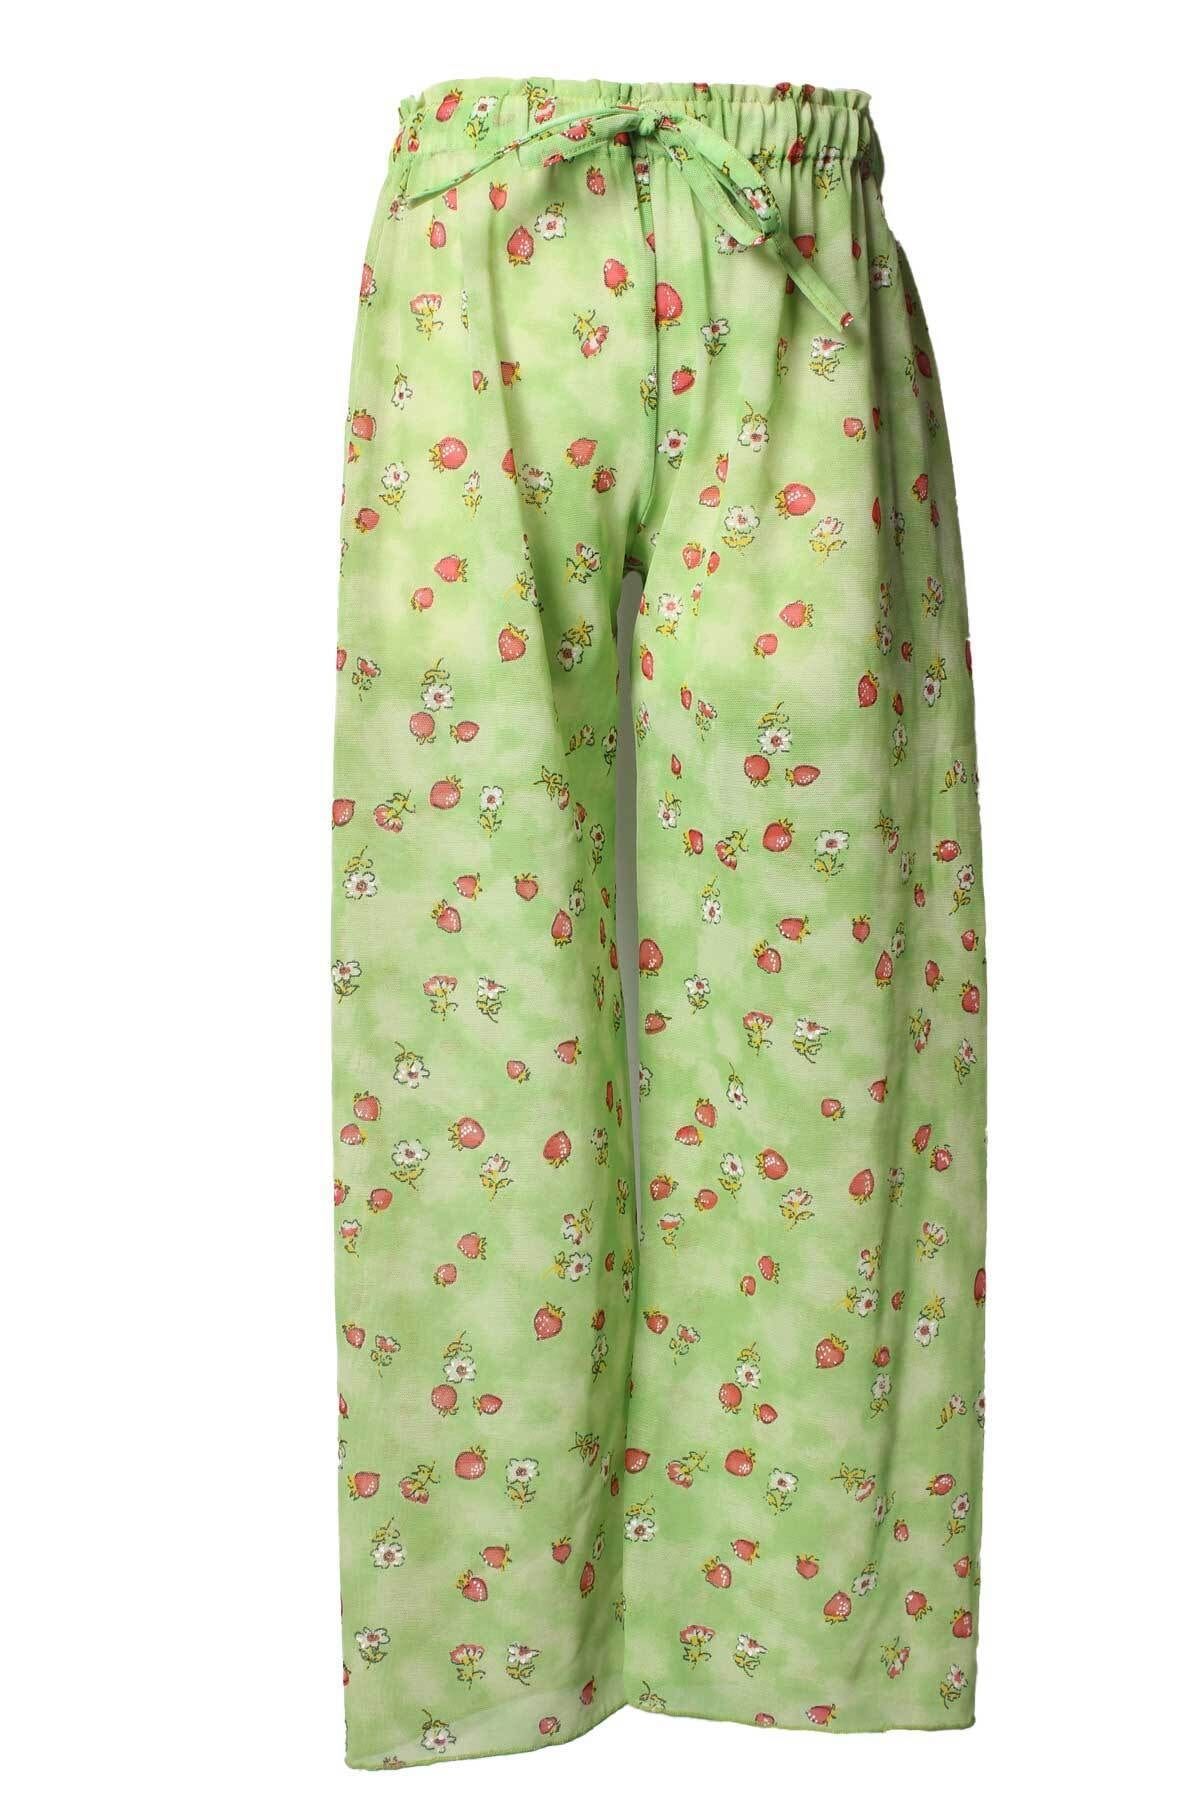 Sude Kız Çocuk Açık Yeşil Çiçek Desenli Belden Bağlamalı Tül Deniz Pantolonu 168-53